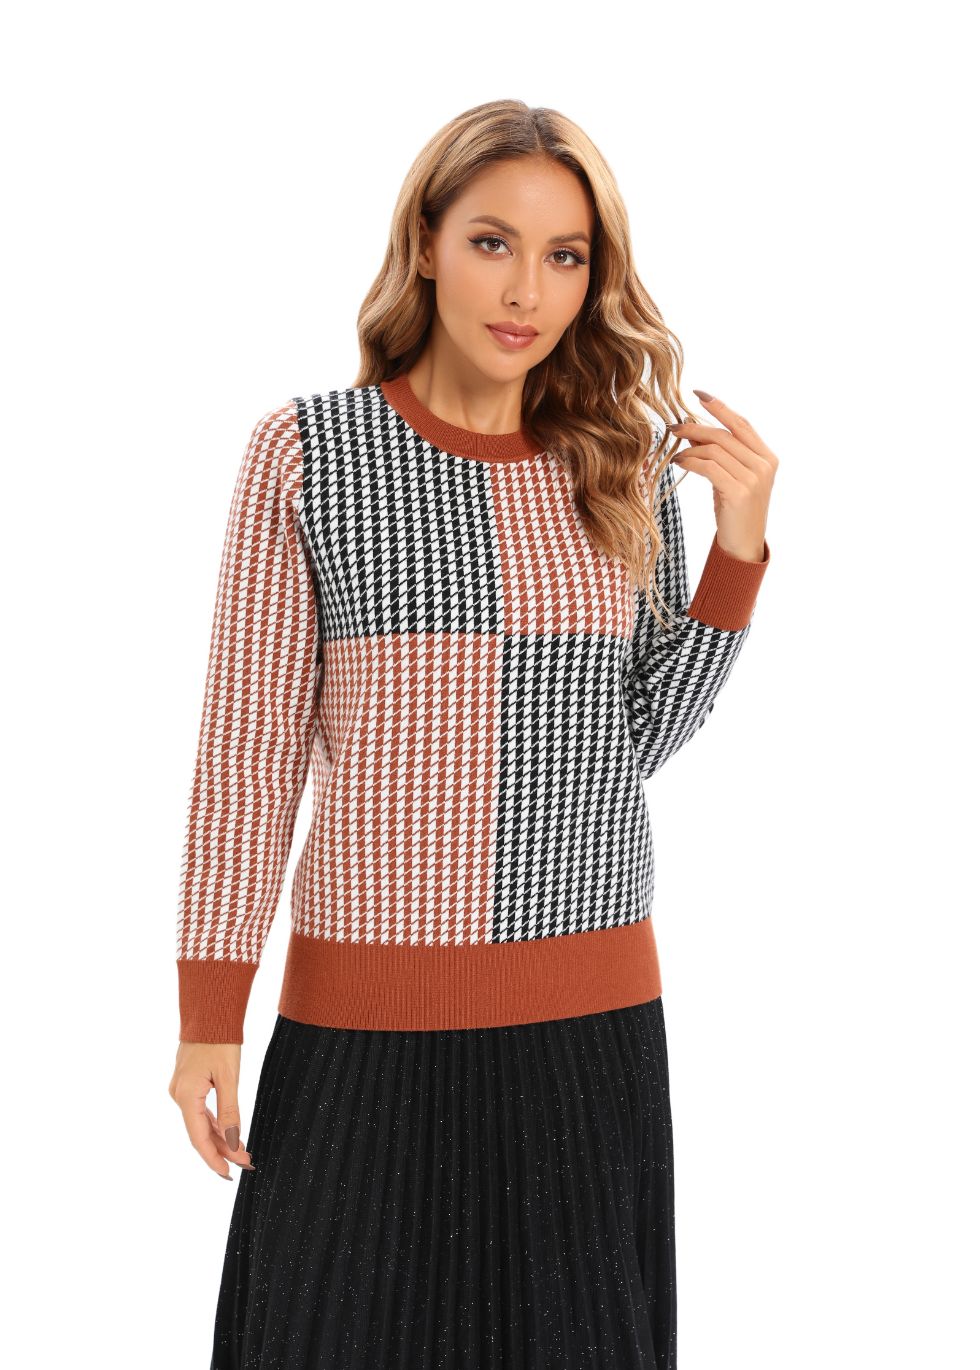 Essential Design Knitted Sweater - MissFinchNYC